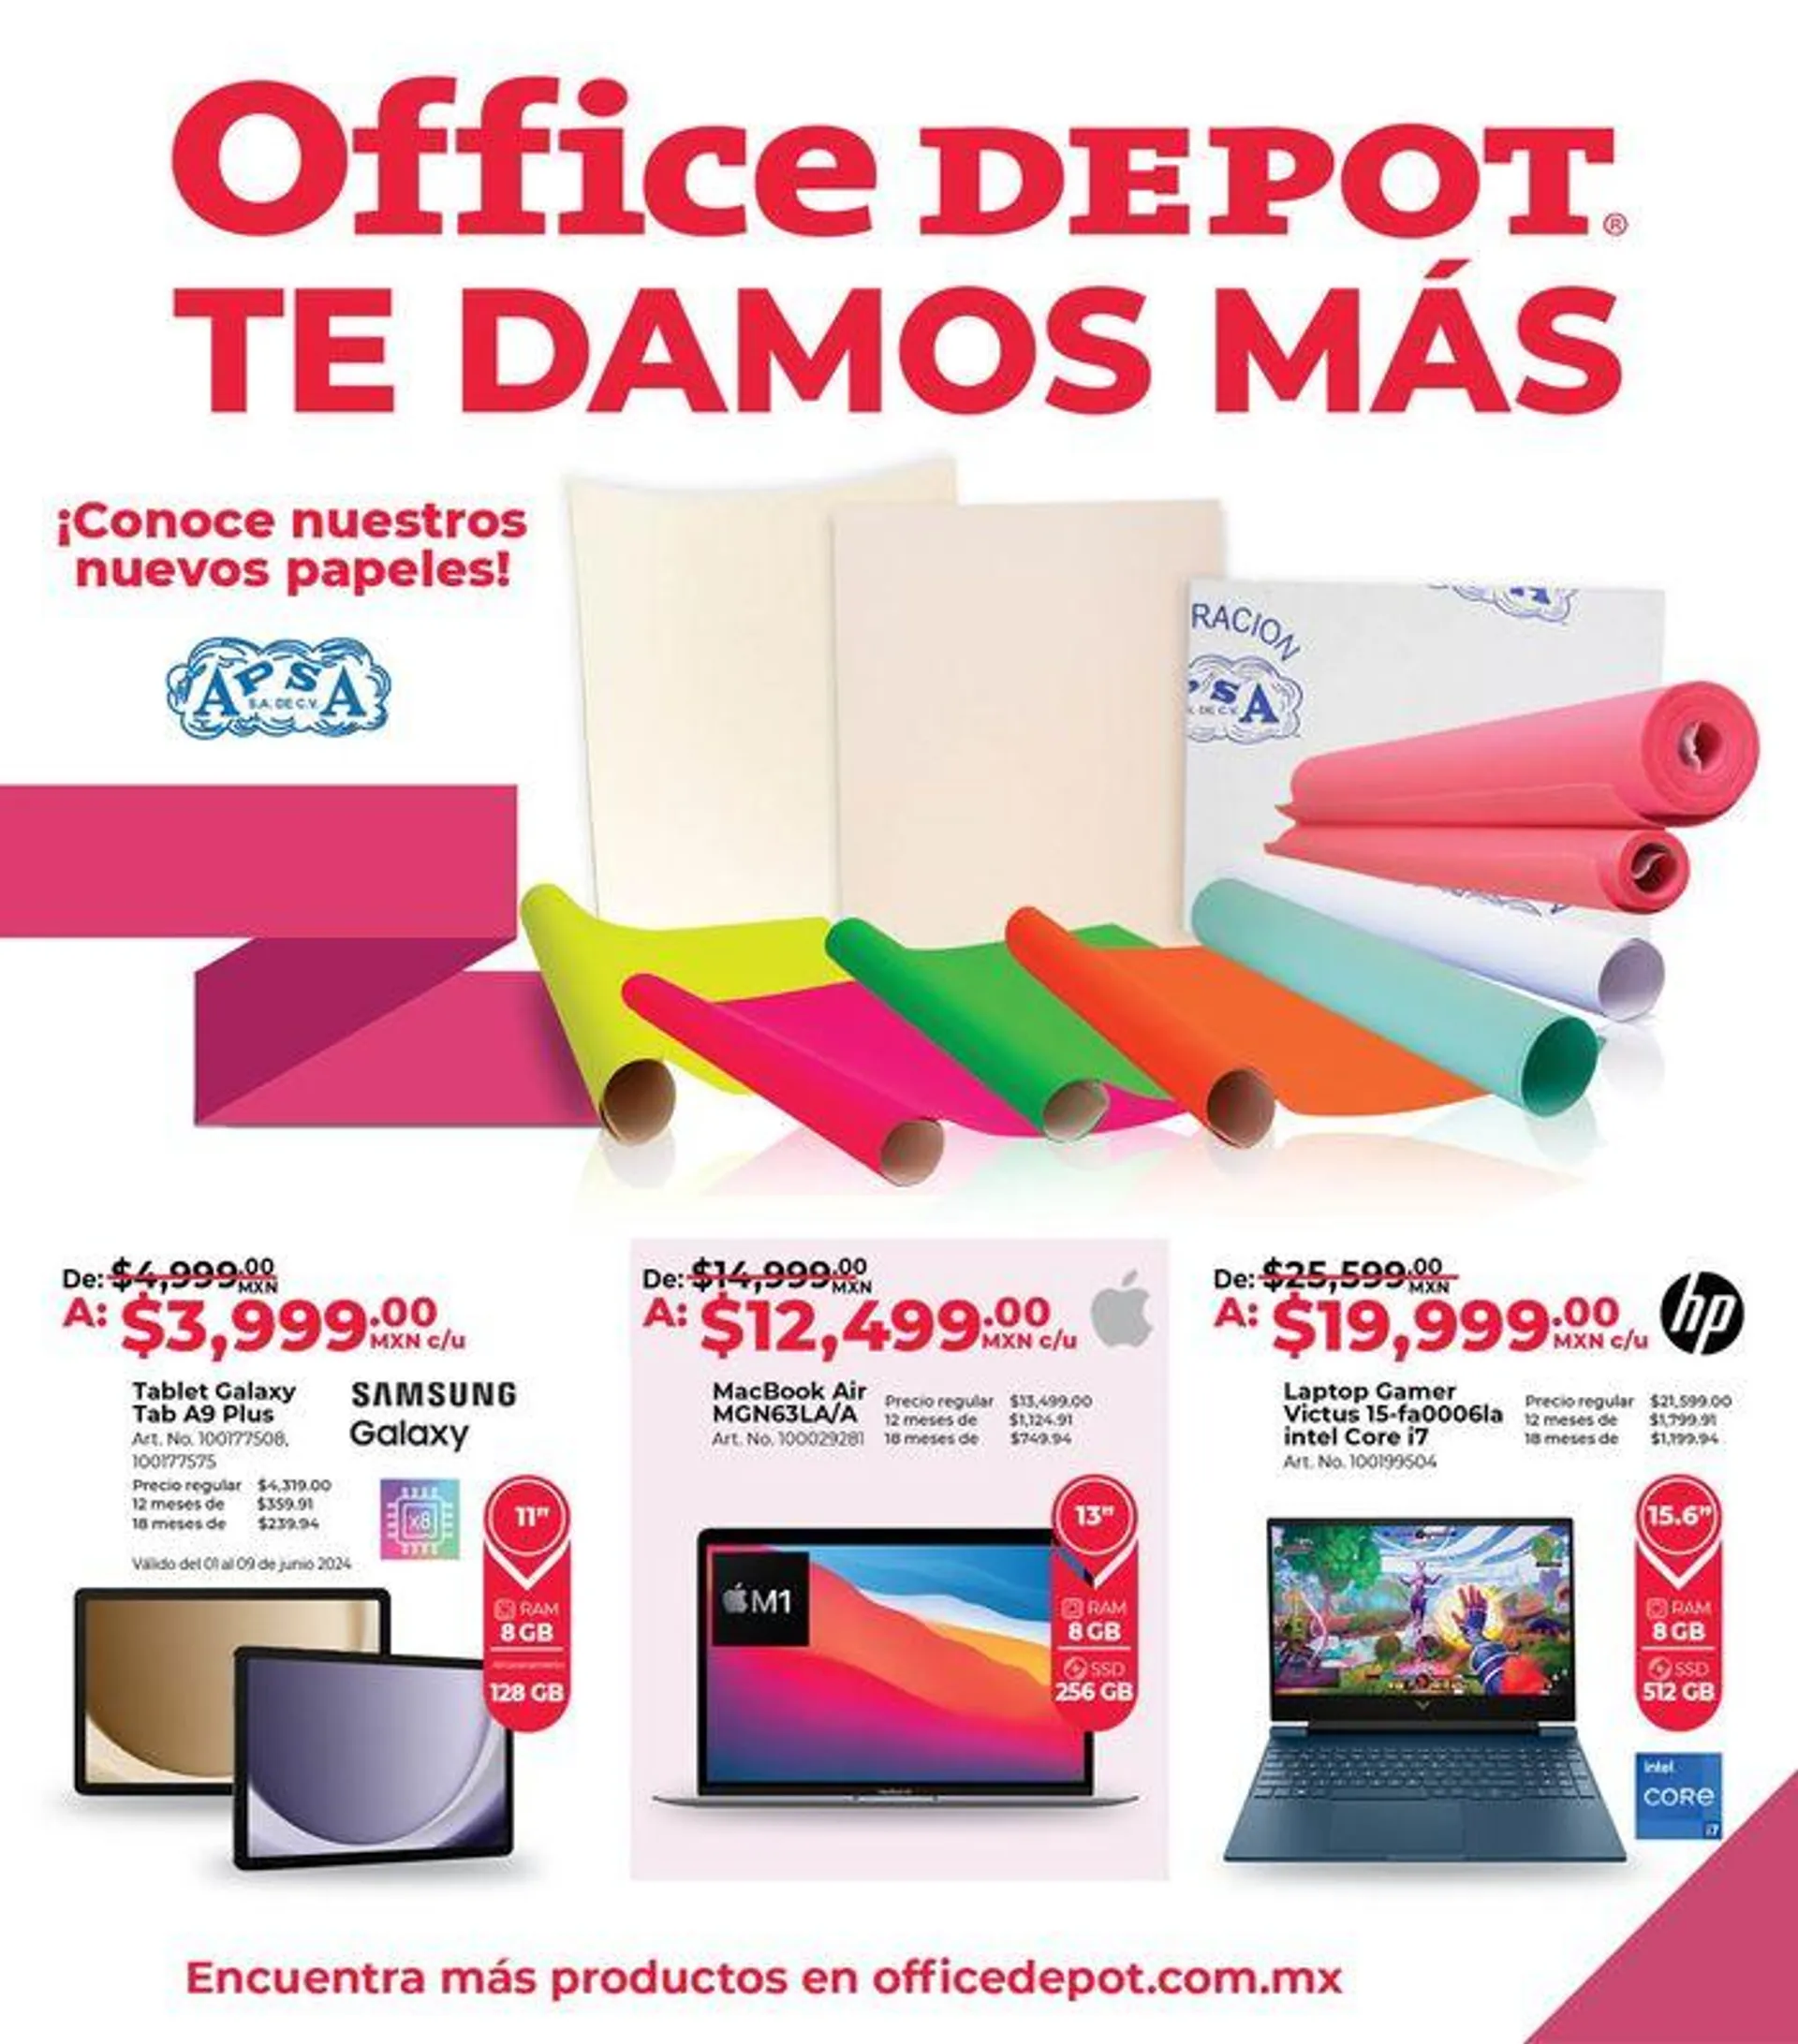 Office Depot : Te damos mas - 1